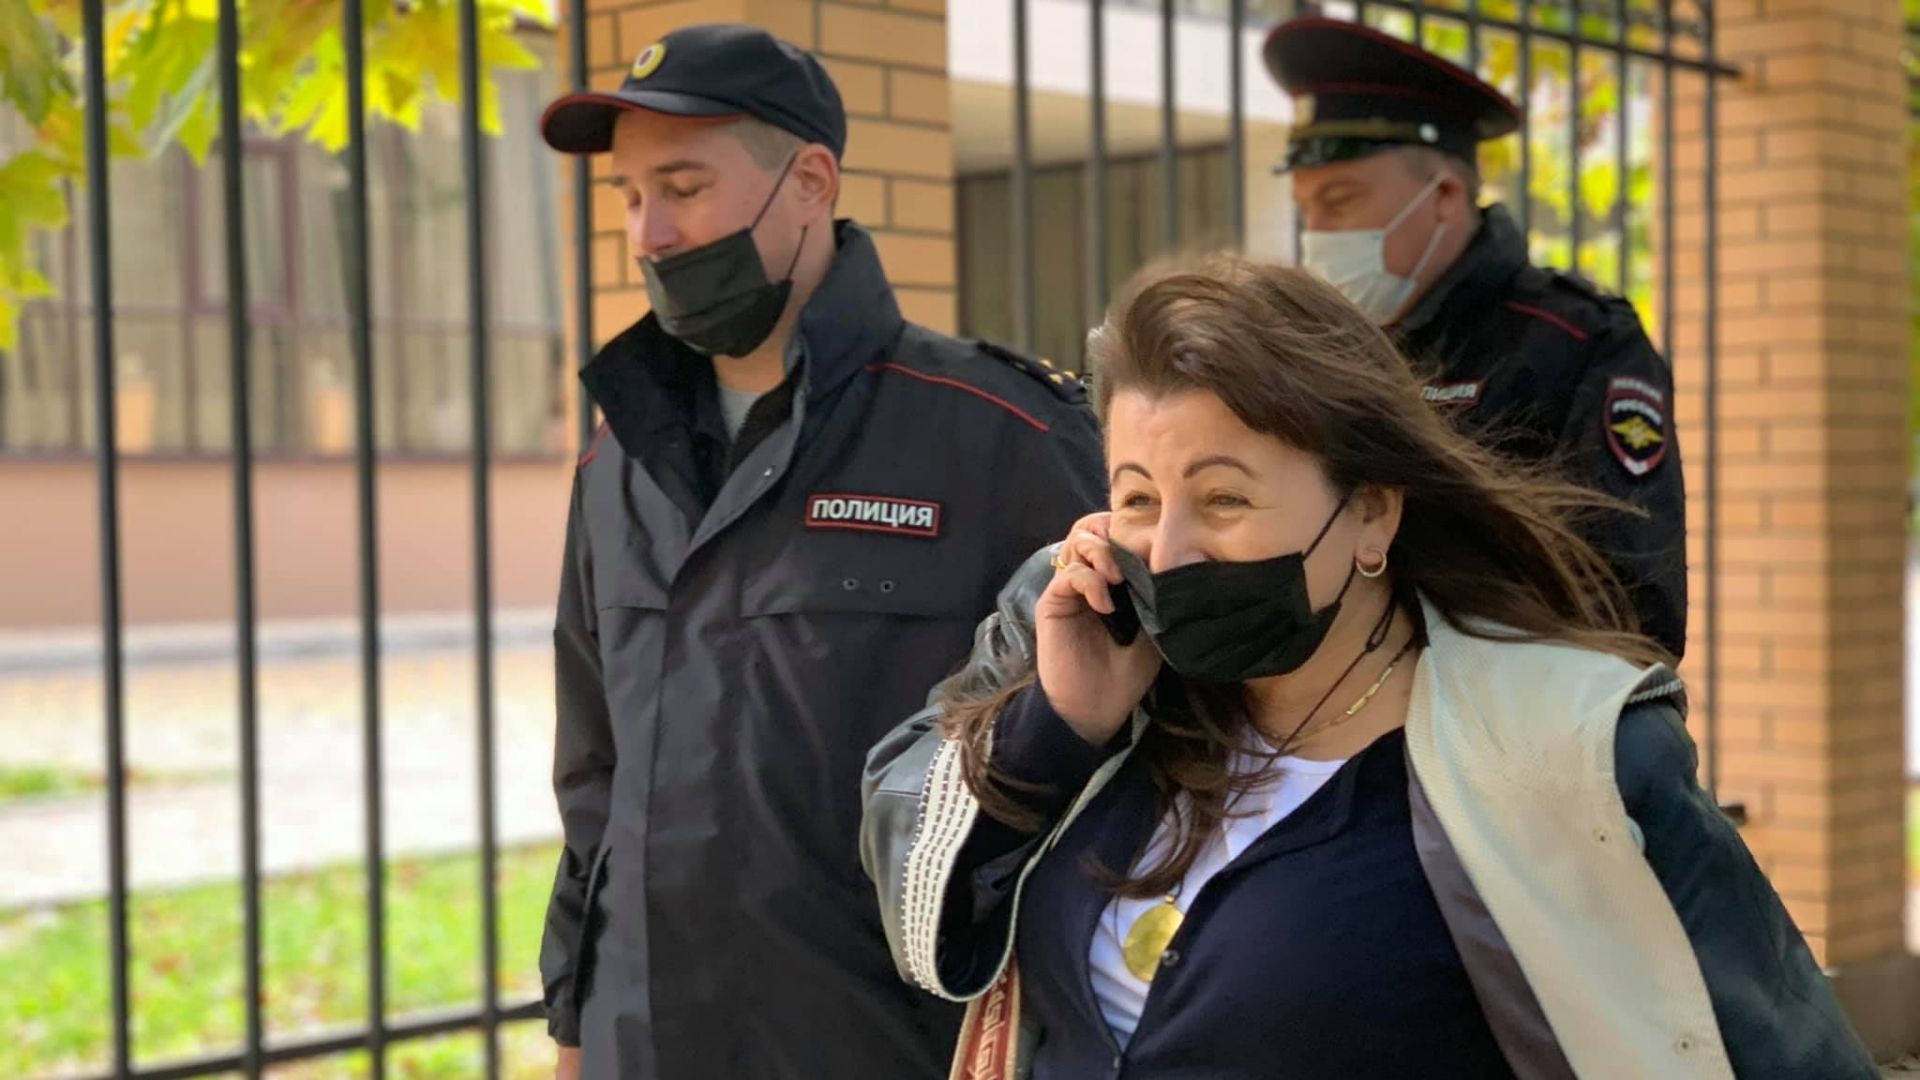 Cотрудники российской полиции задерживают активистку Лейлю Яшлавскую. Фото: Elmaz Qirimli (Facebook)